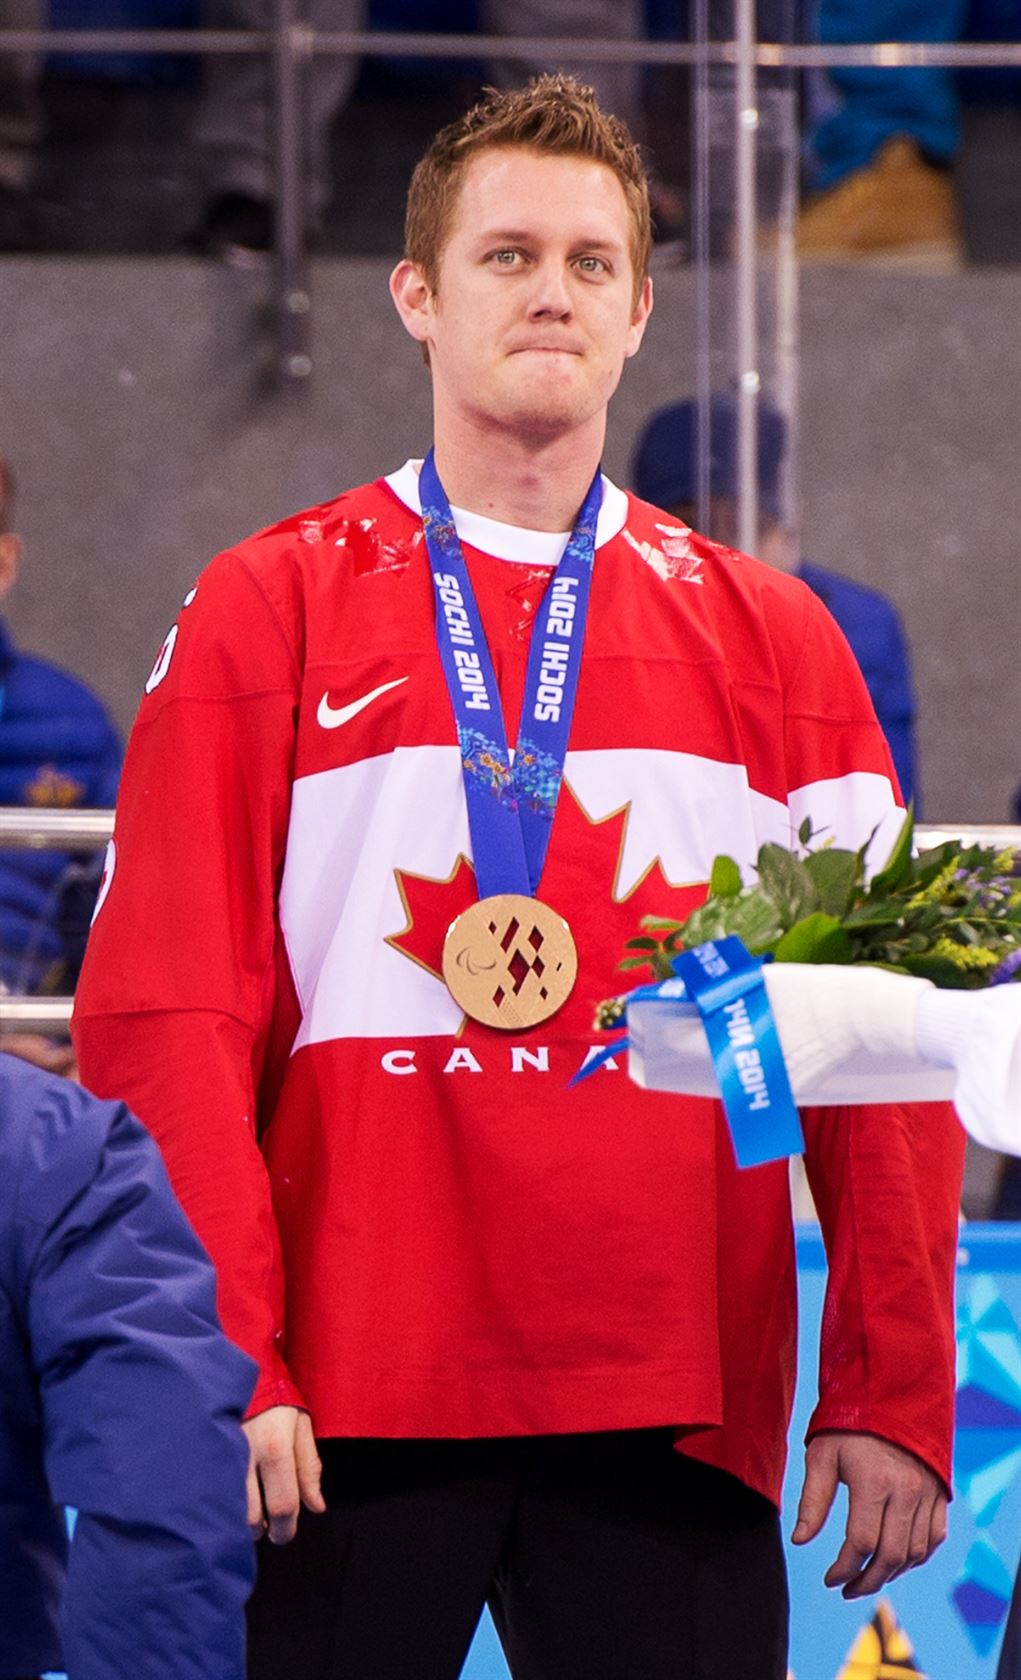 Dominic Larocque reçoit sa médaille de bronze en hockey